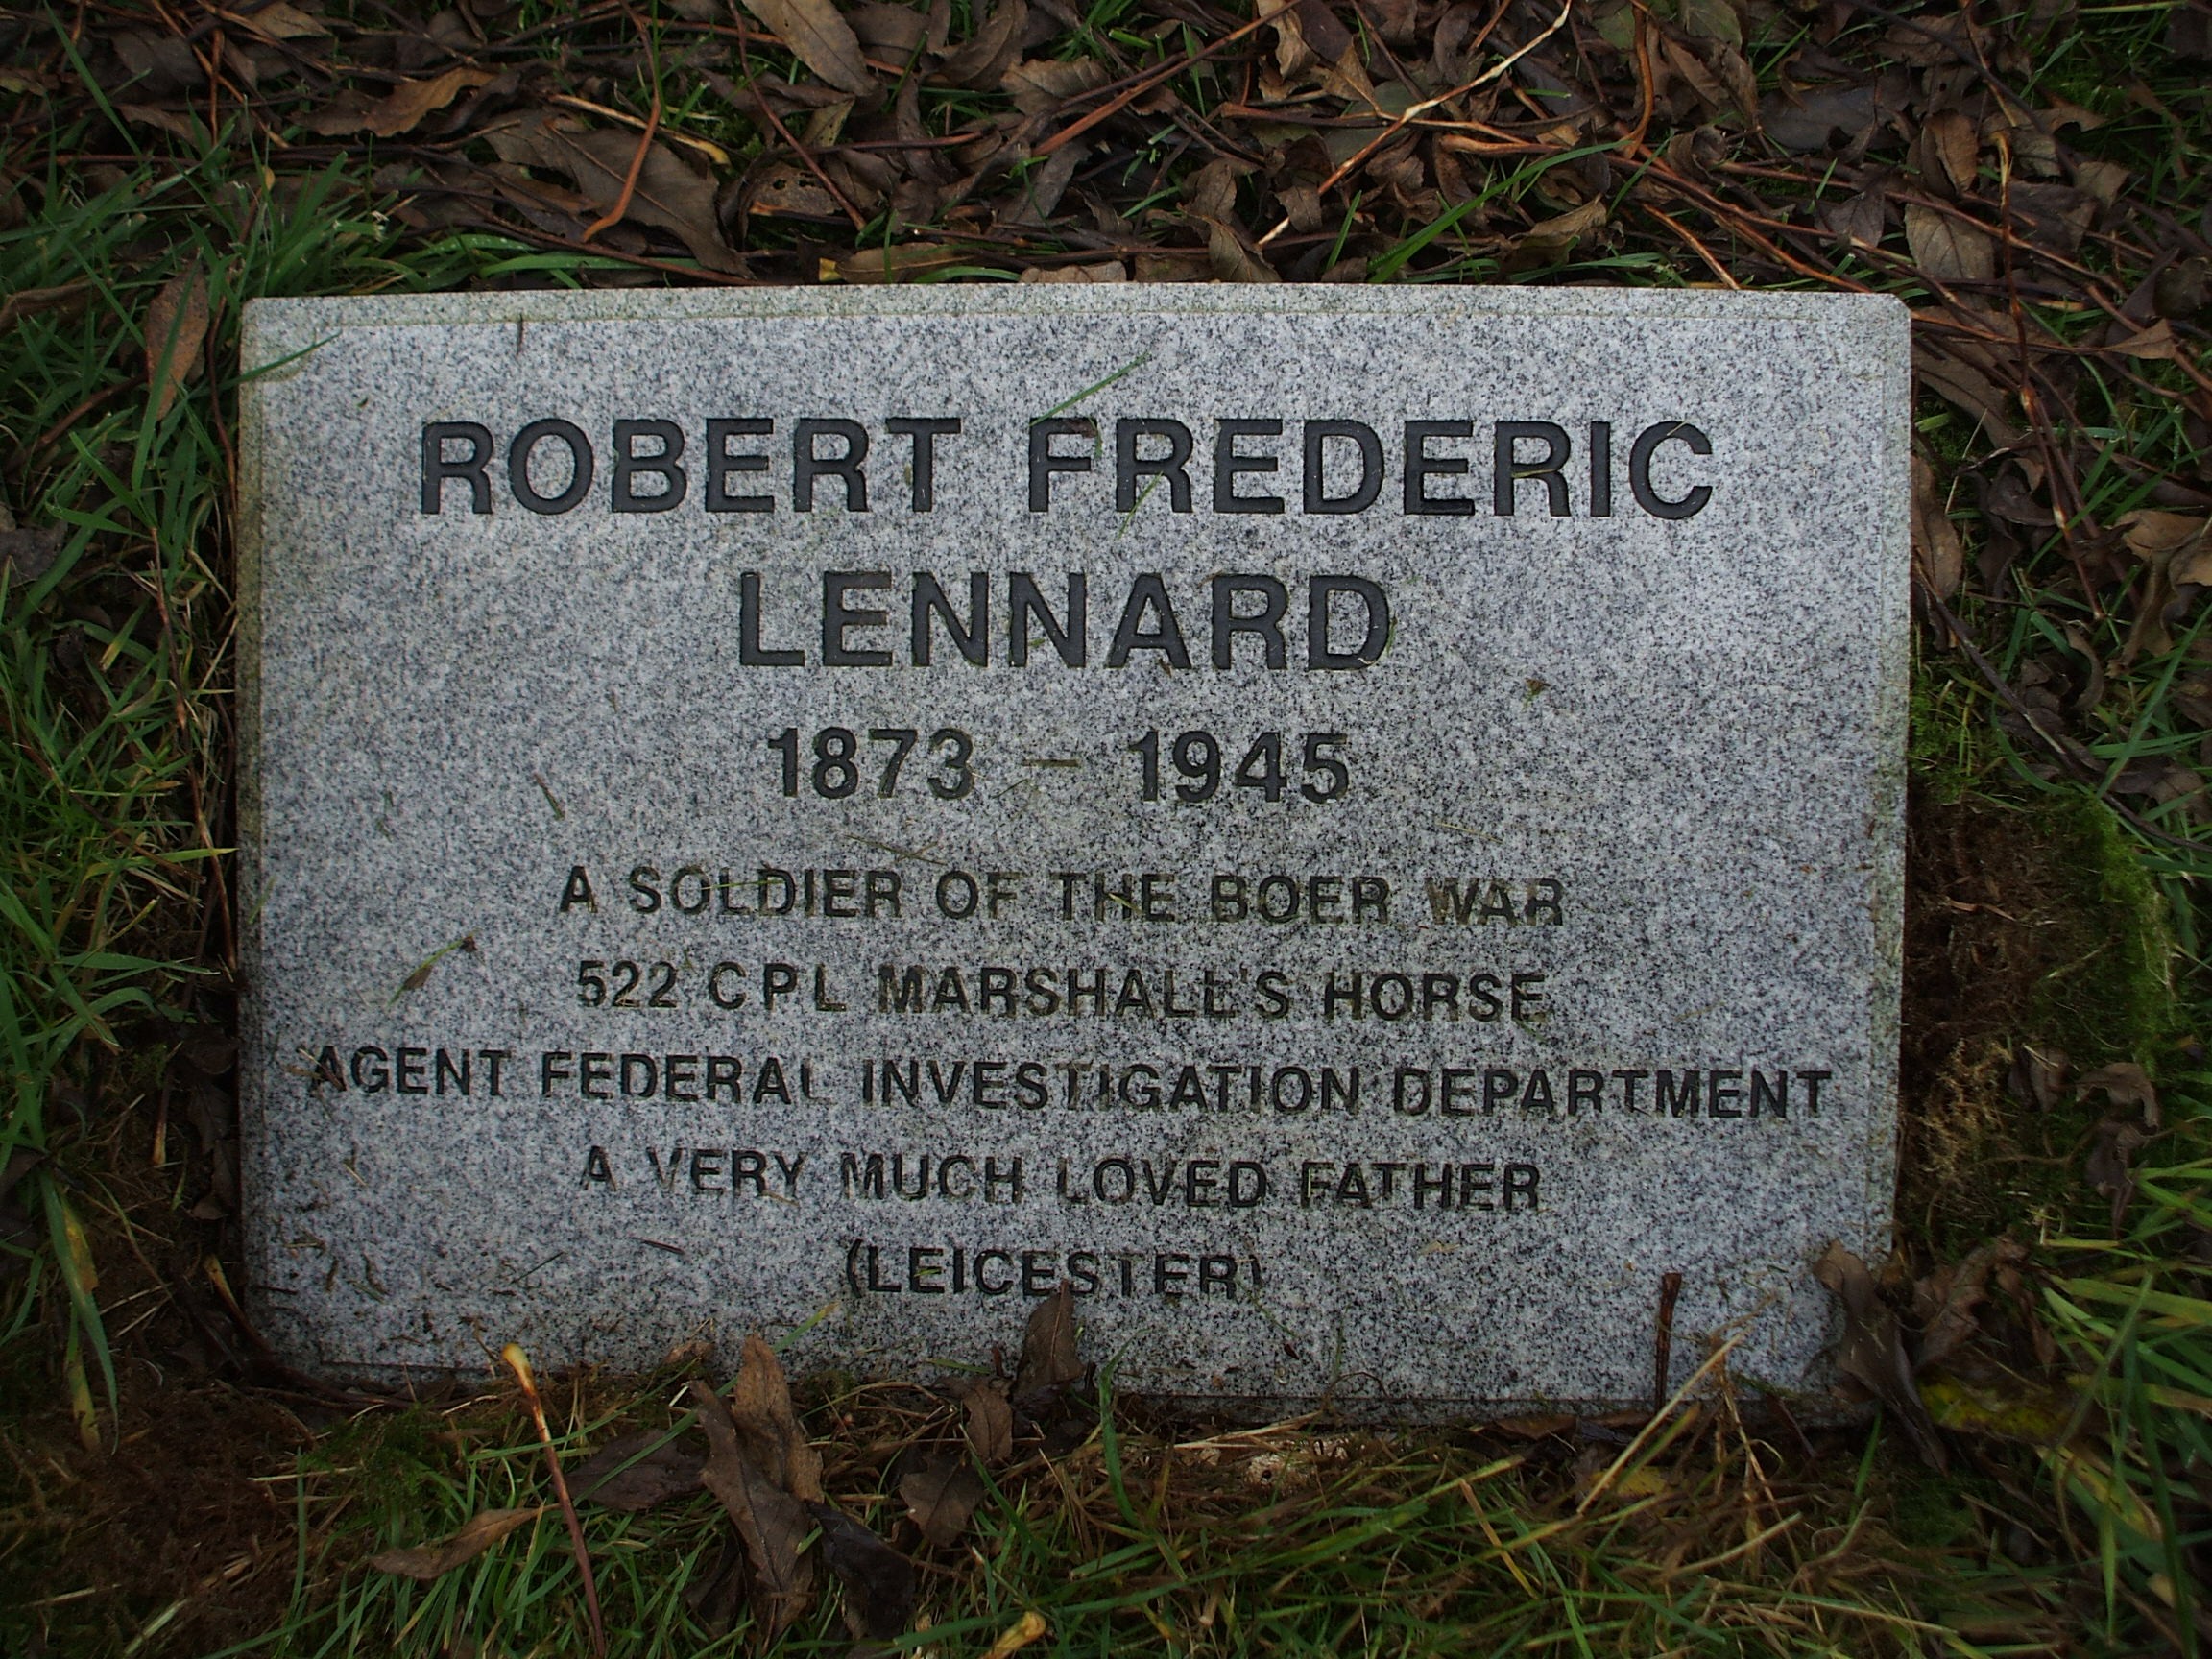 Robert Frederic LENNARD